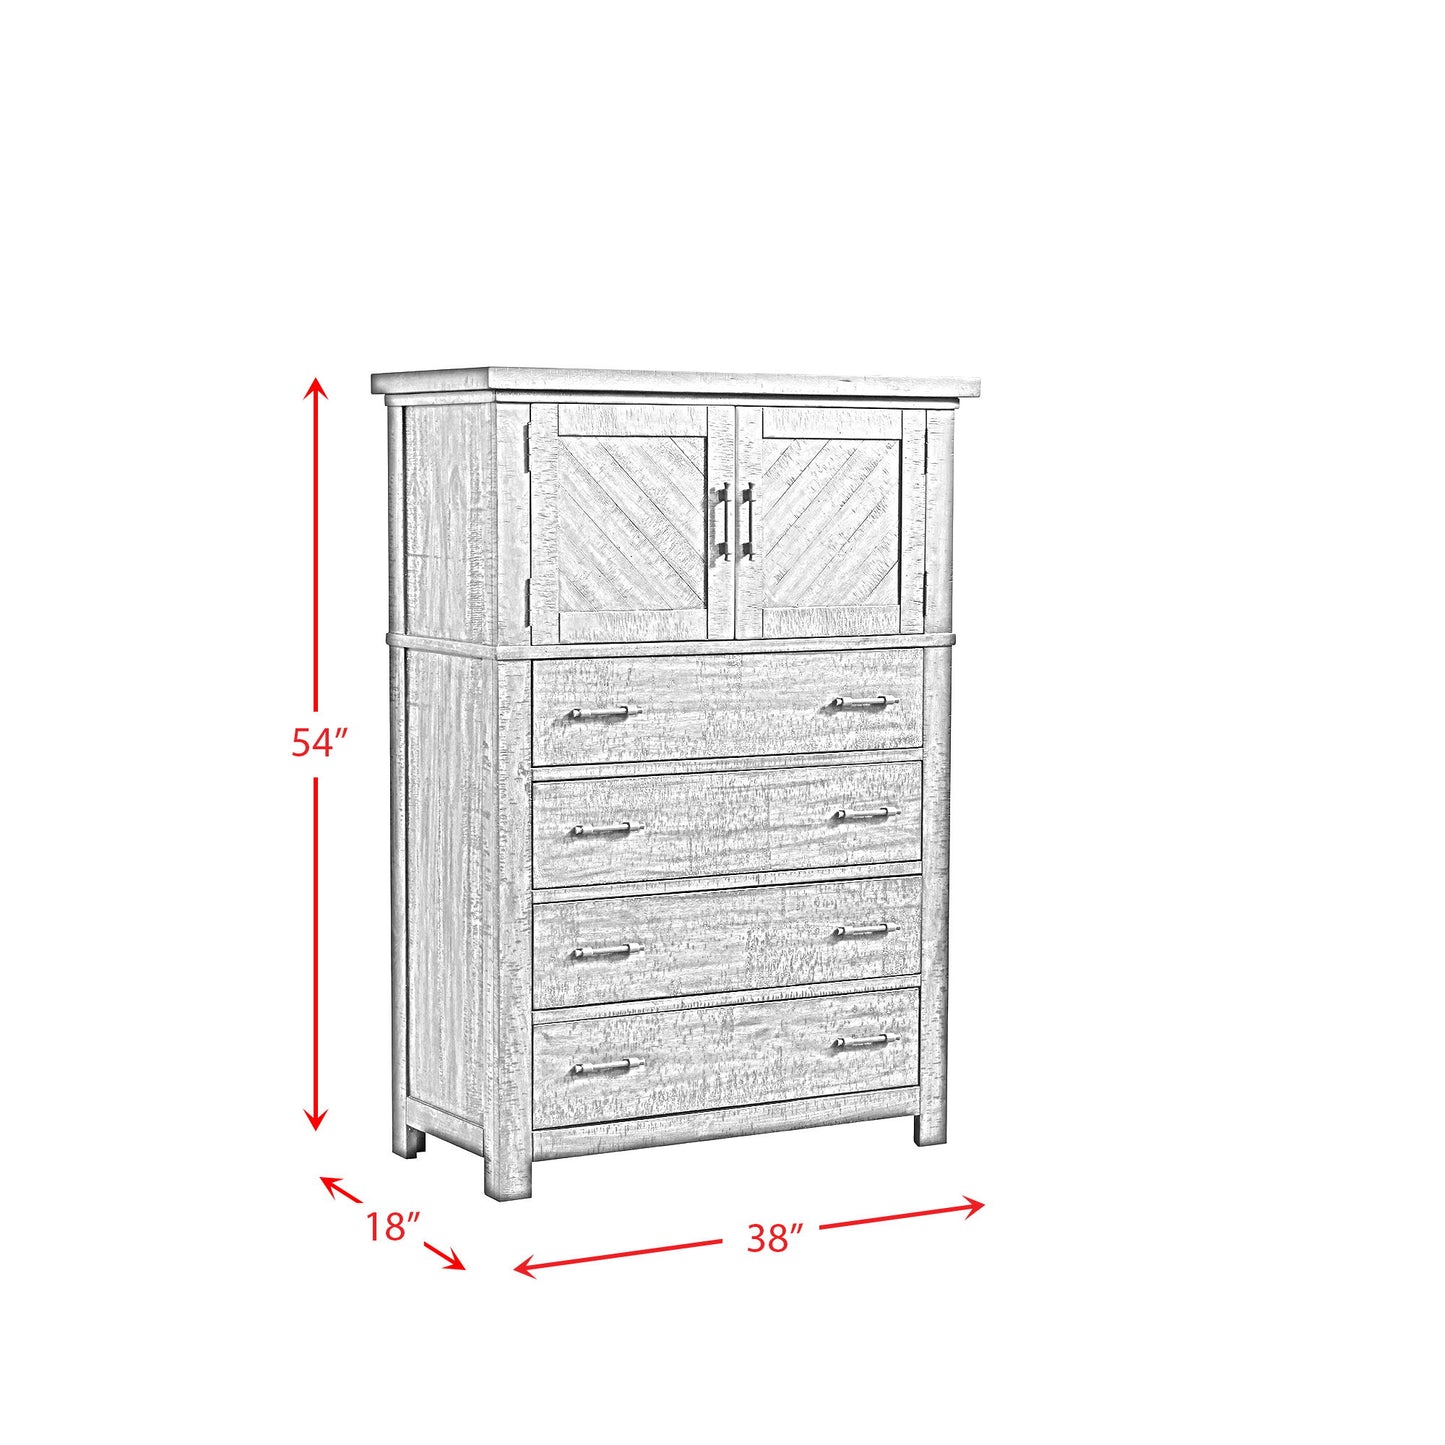 Jax - Platform Storage Bedroom Set